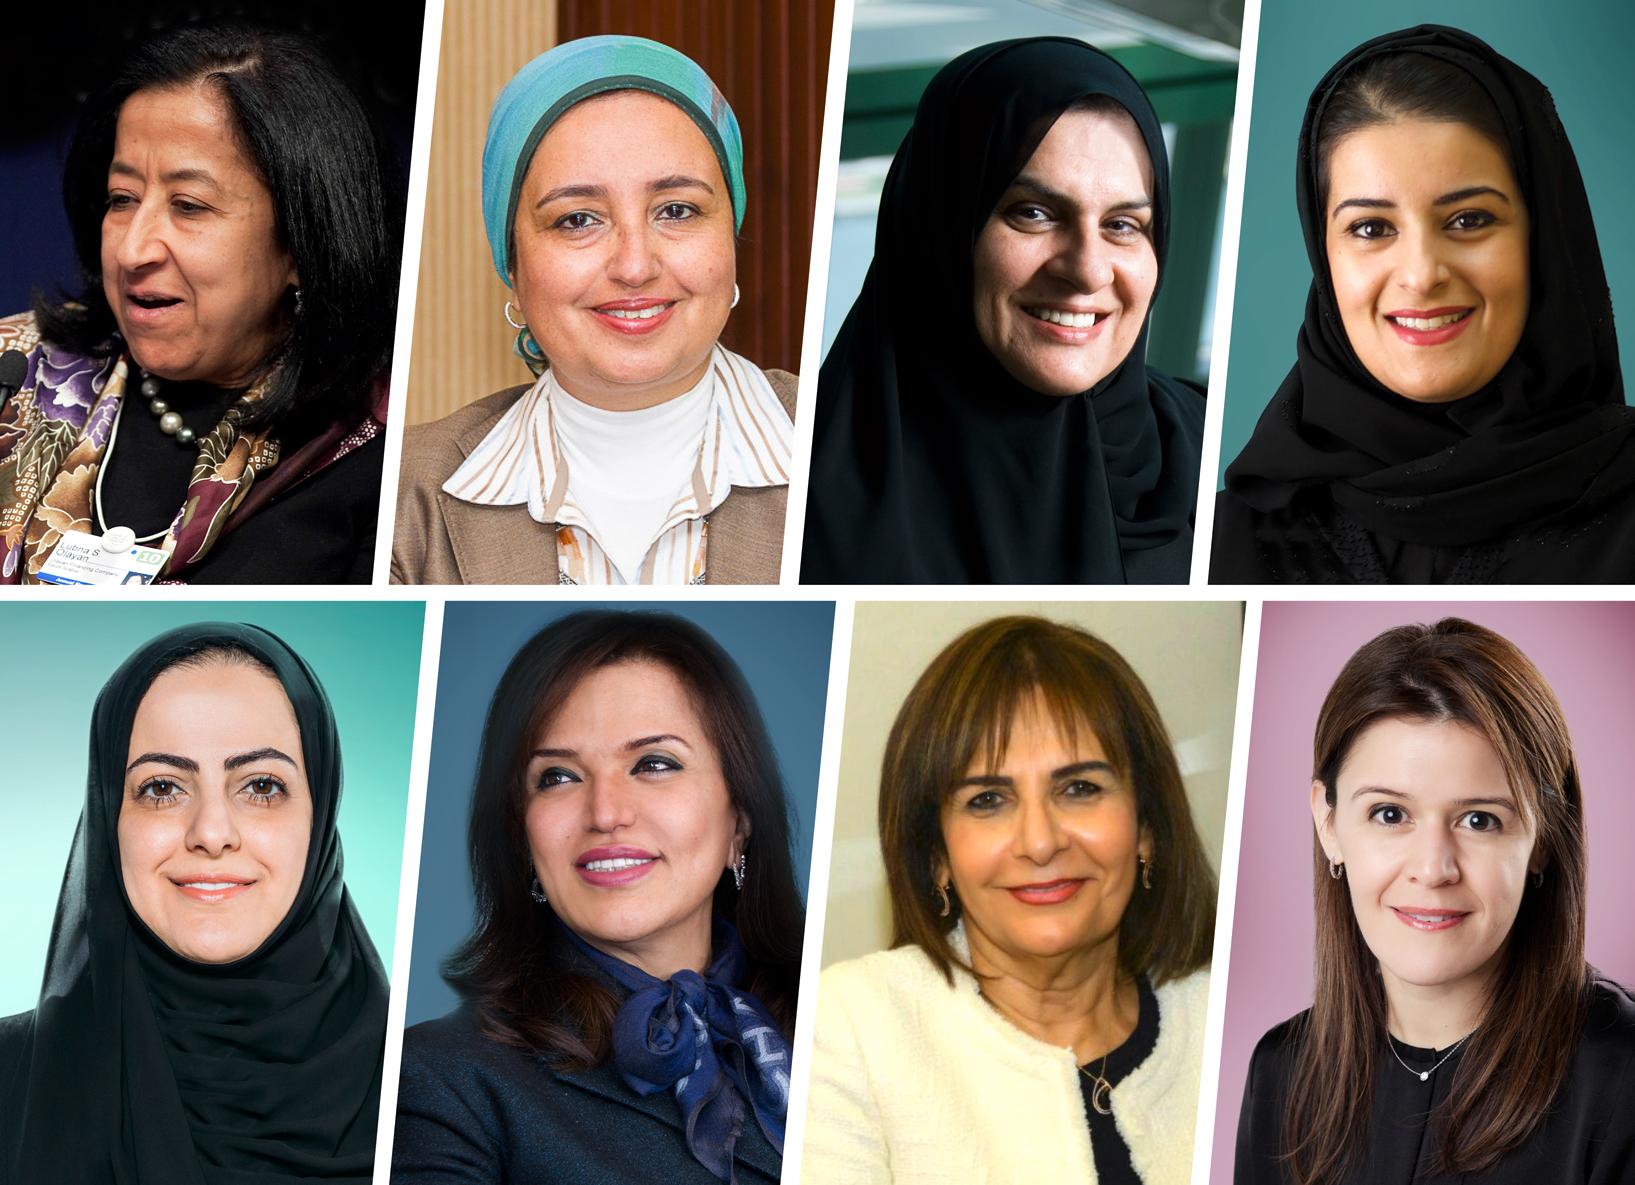 أقوى سيدة عربية لعام 2017 ... قائمة فوربس لأقوى السيدات العربية لعام 2017